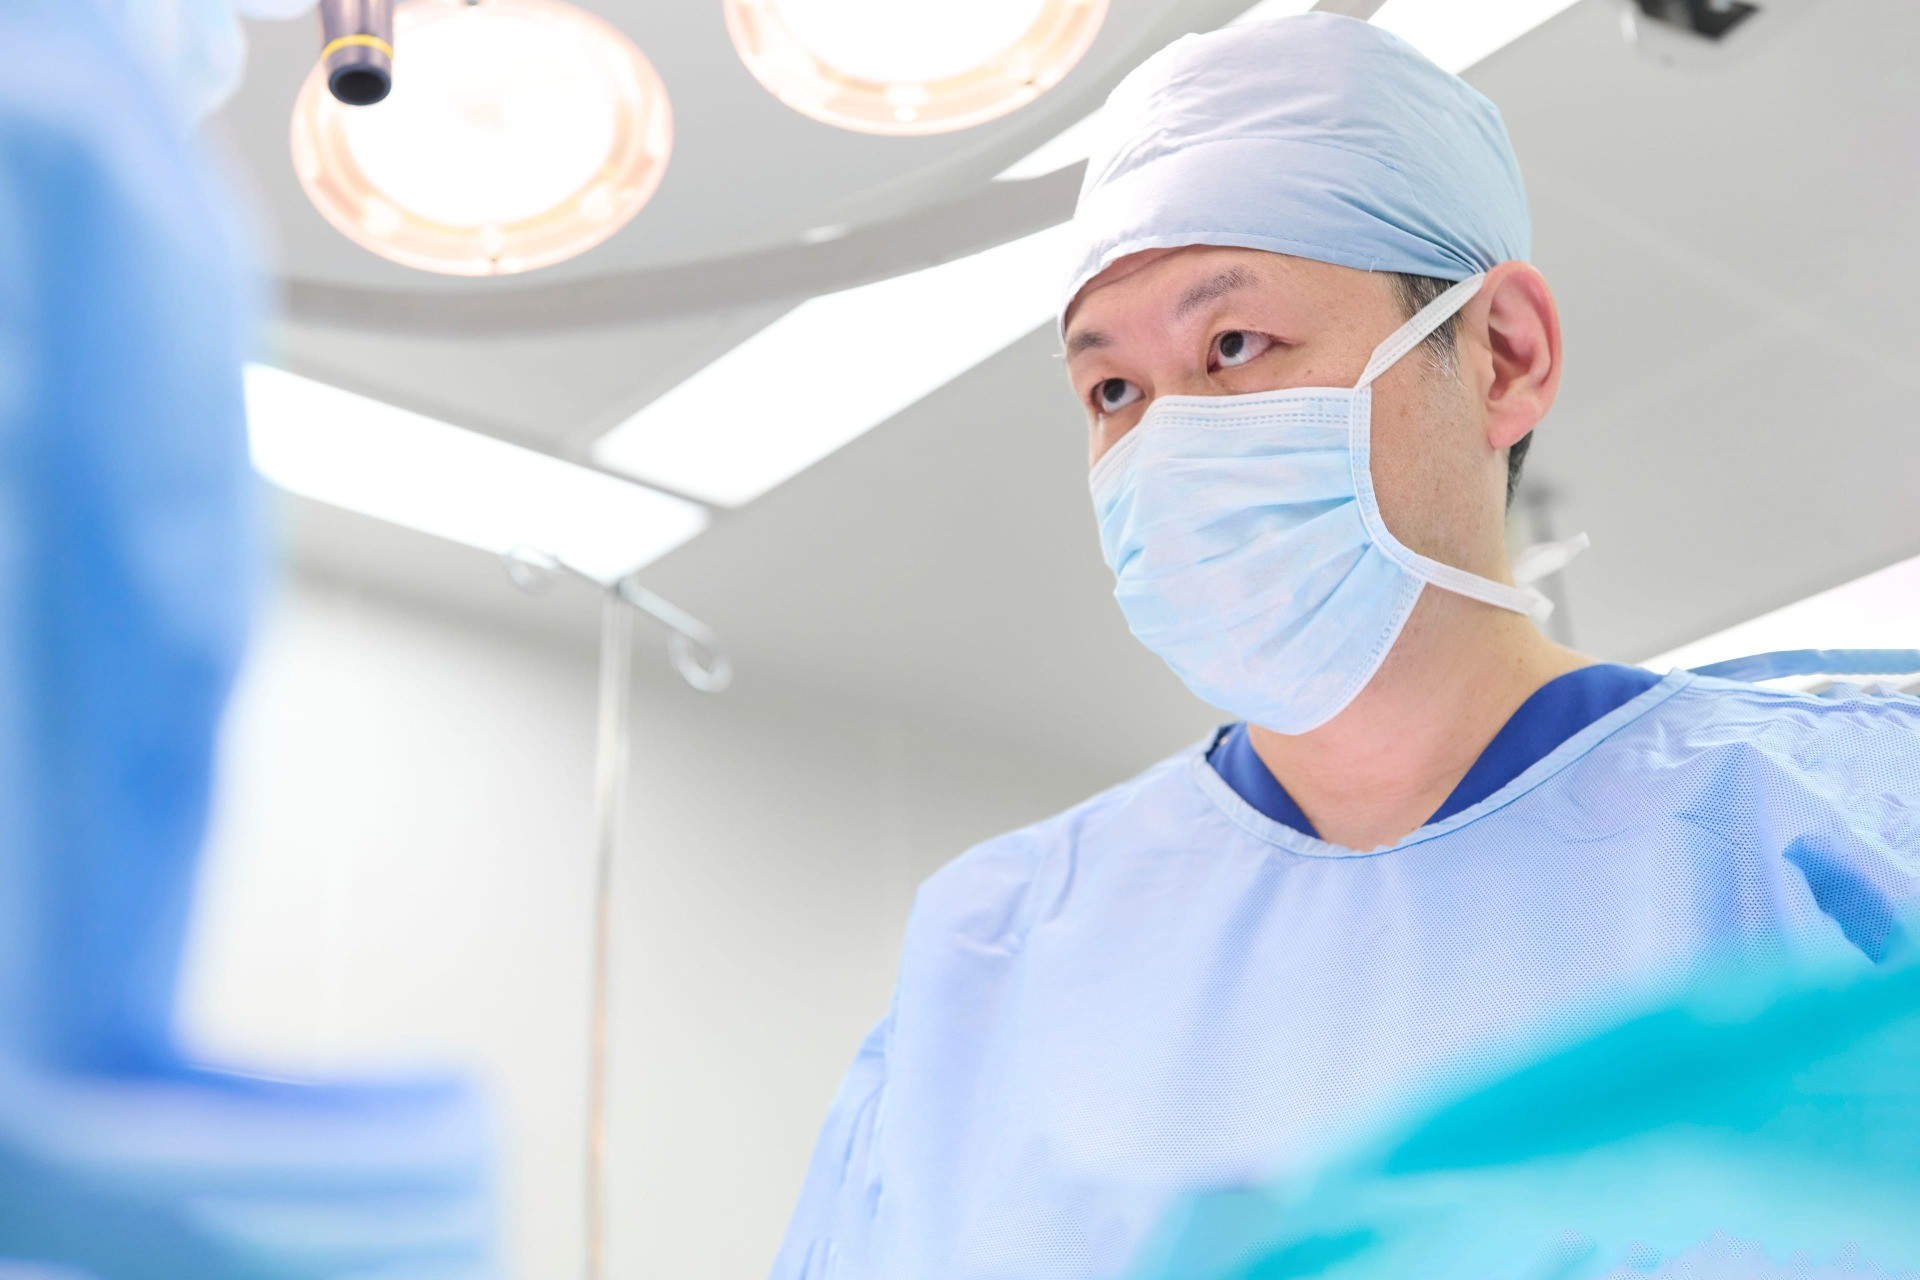 神奈川県央エリアを牽引する外科医を育て、地域に貢献する